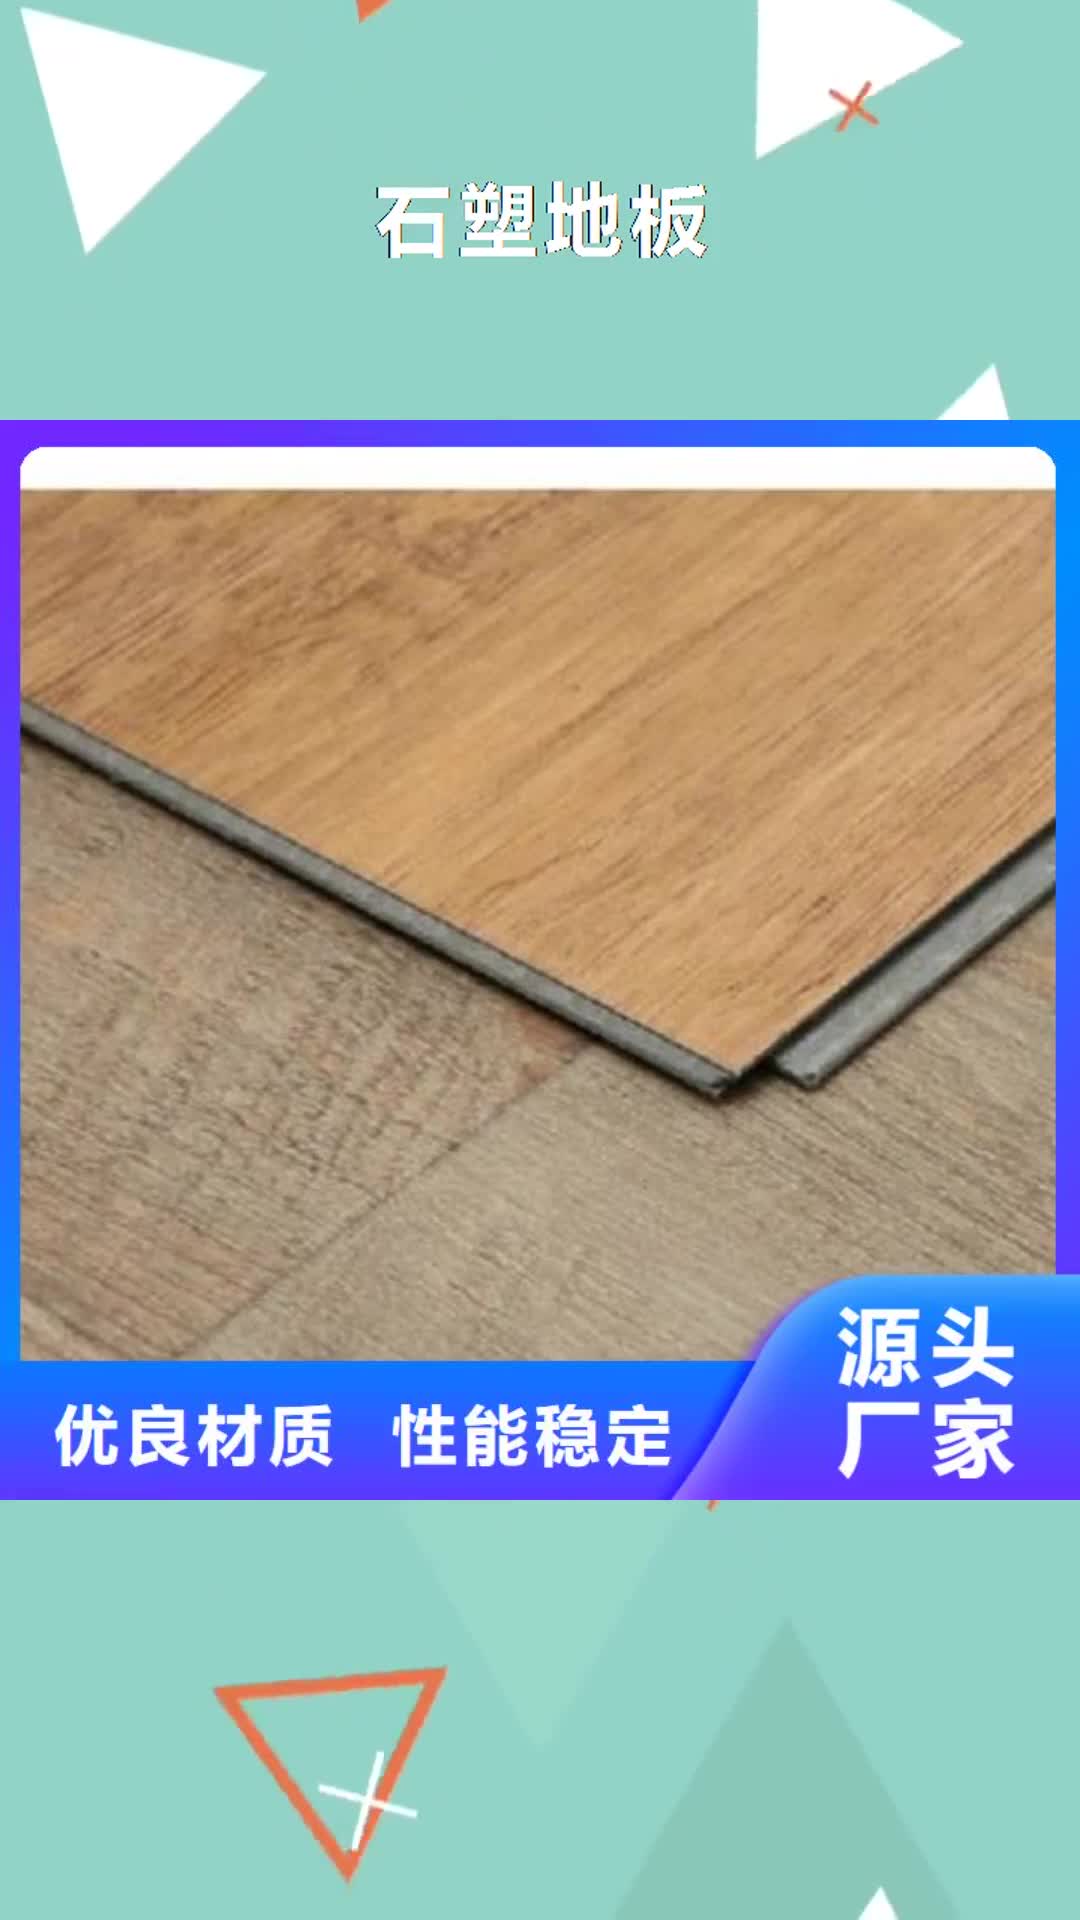 【安徽 石塑地板,竹木纤维集成墙板一站式采购】